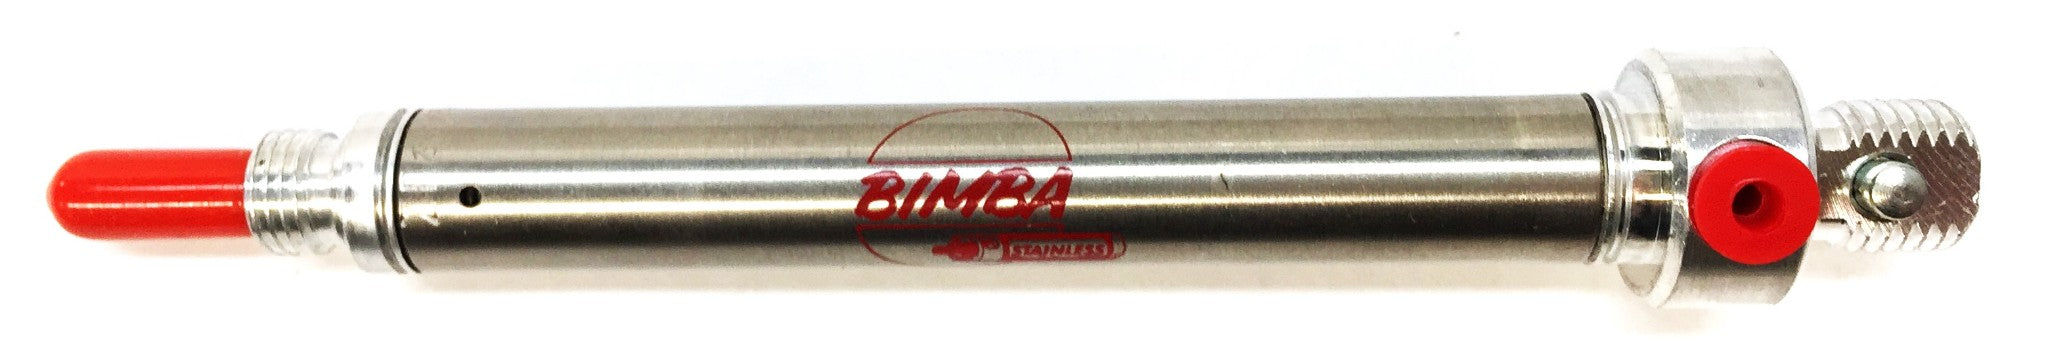 Bimba Stainless Pneumatic Air Cylinder 011.5-P NOS